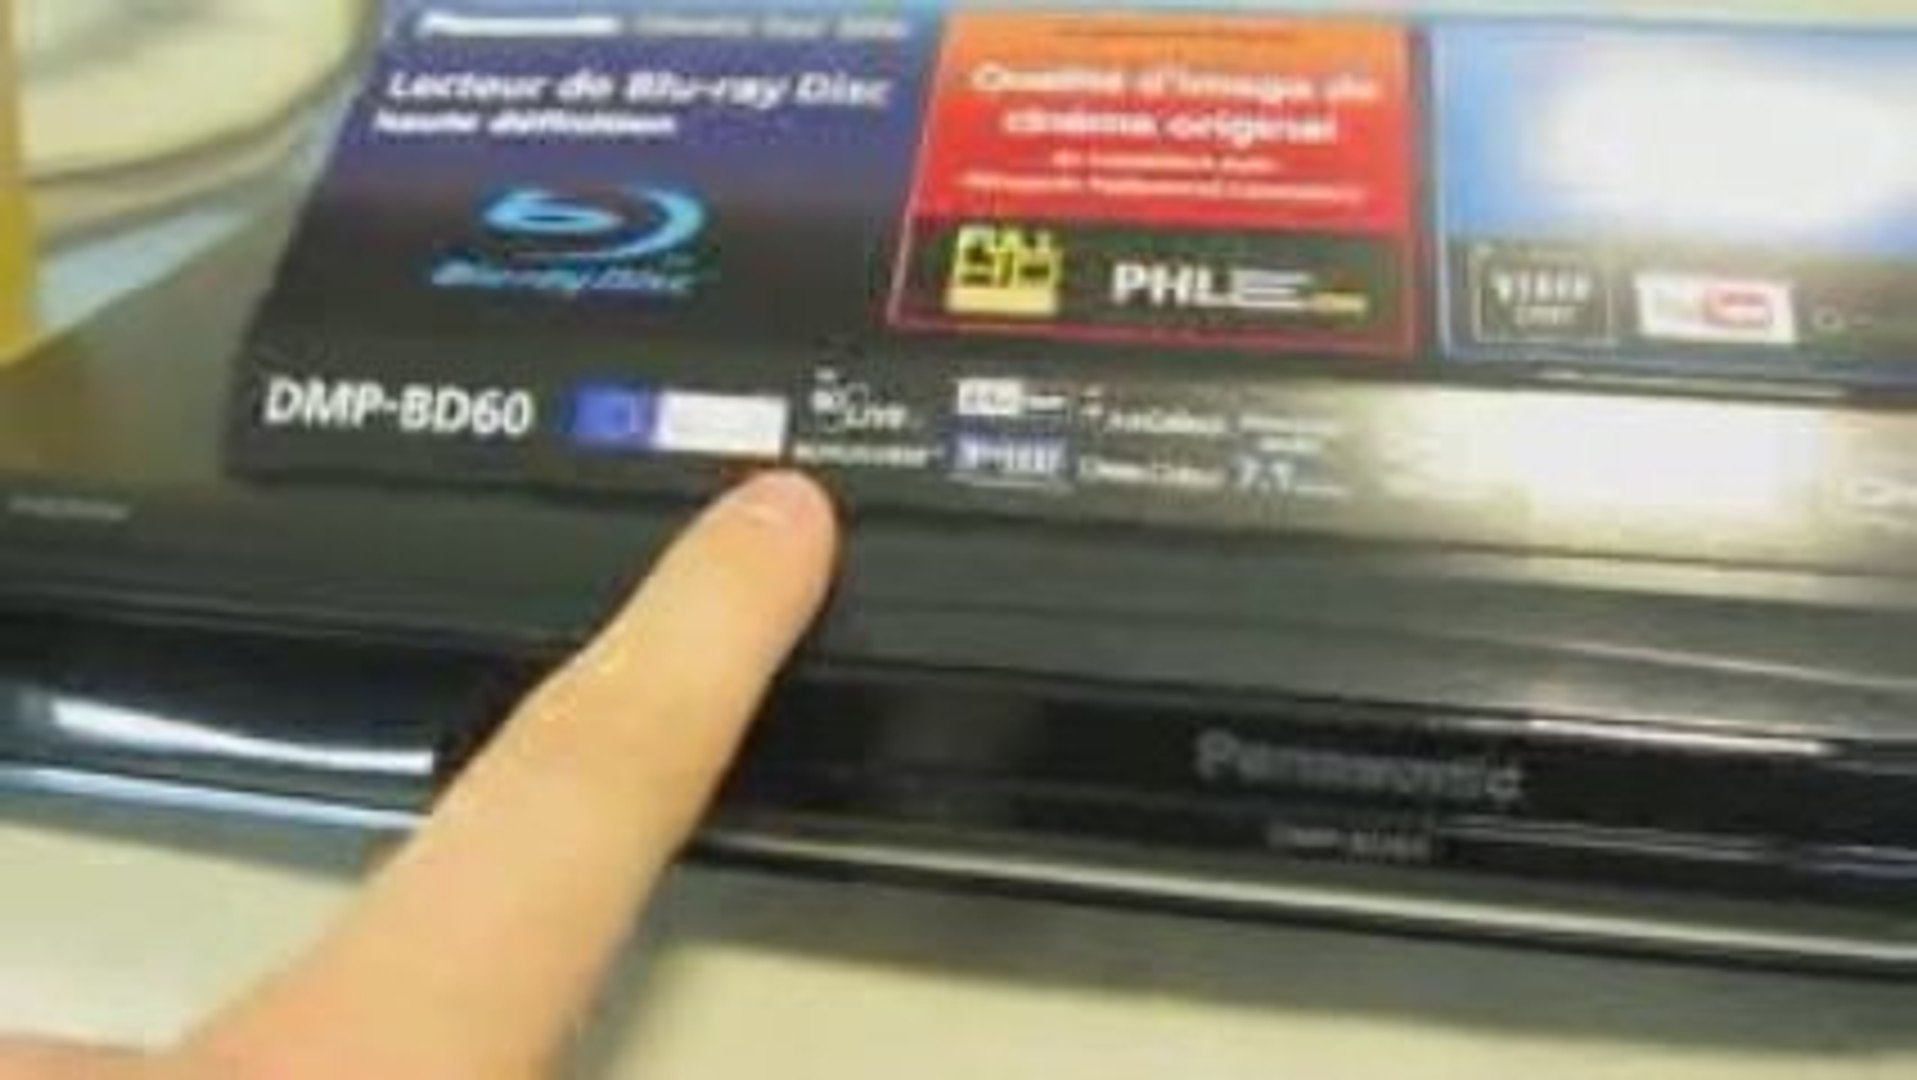 Panasonic DMP-BD60 : lecteur Blu-ray profile 2.0 - Vidéo Dailymotion